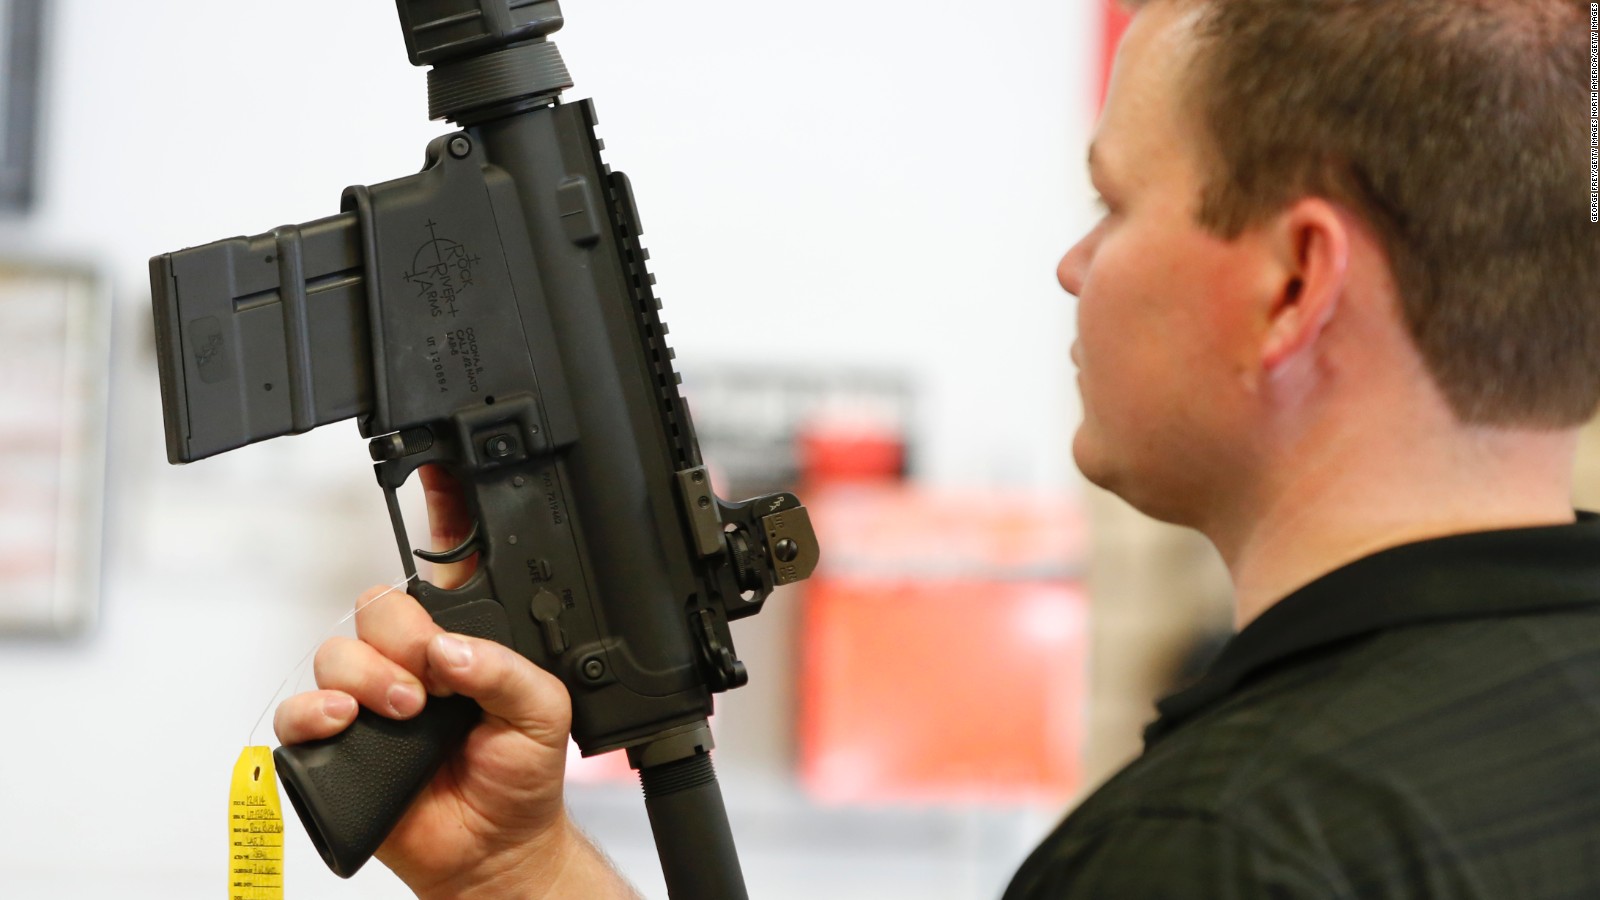 Qué requisitos son necesarios para obtener un arma en Estados Unidos?